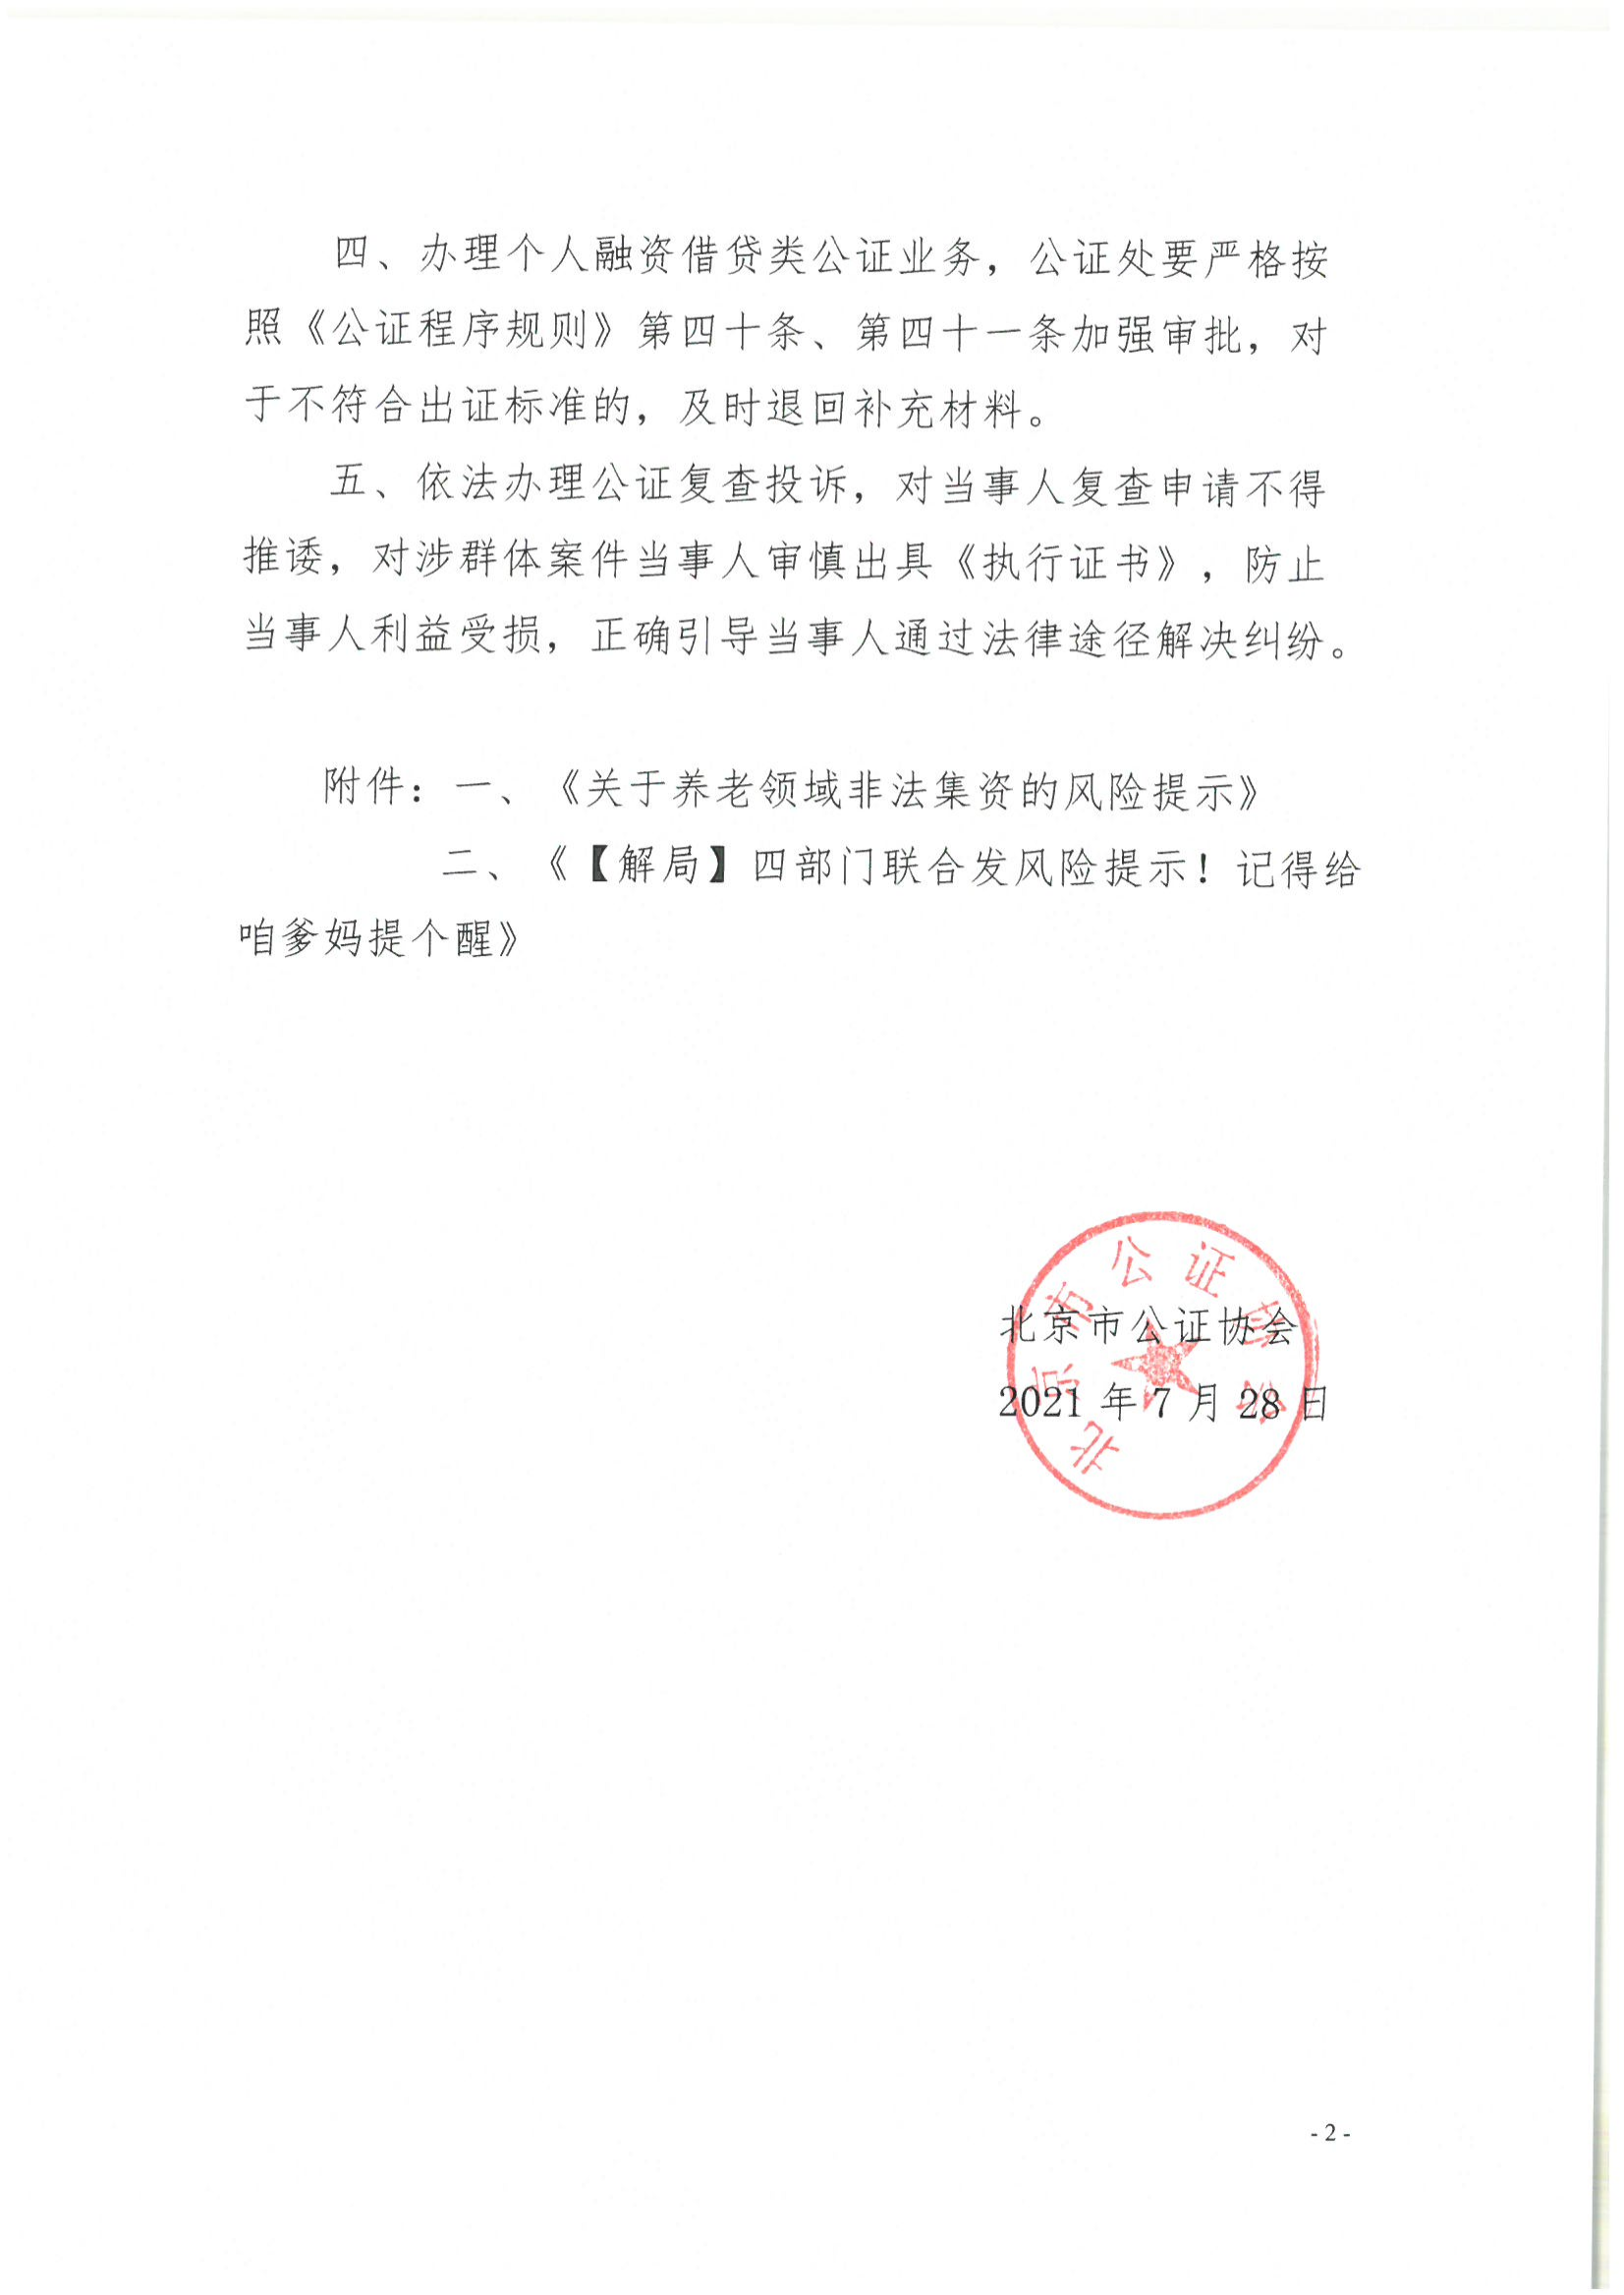 6、北京市公证协会风险提示【2021年第1号】_01